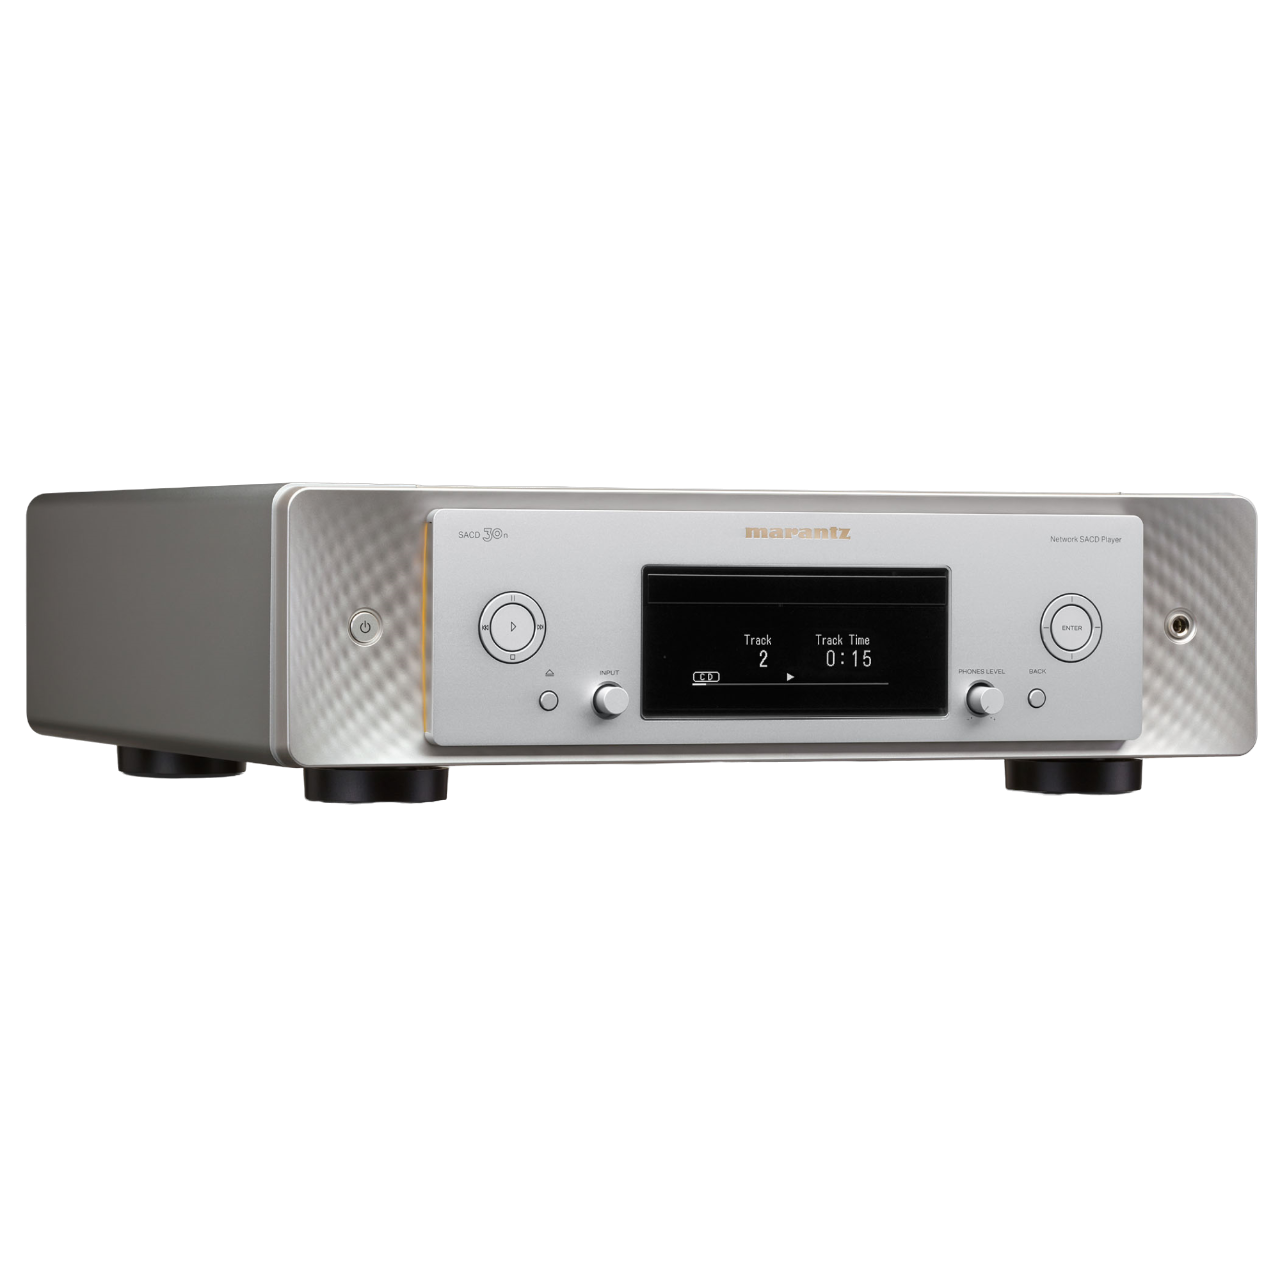 SACD 30n | Network Audio Player | CD/SACD Player